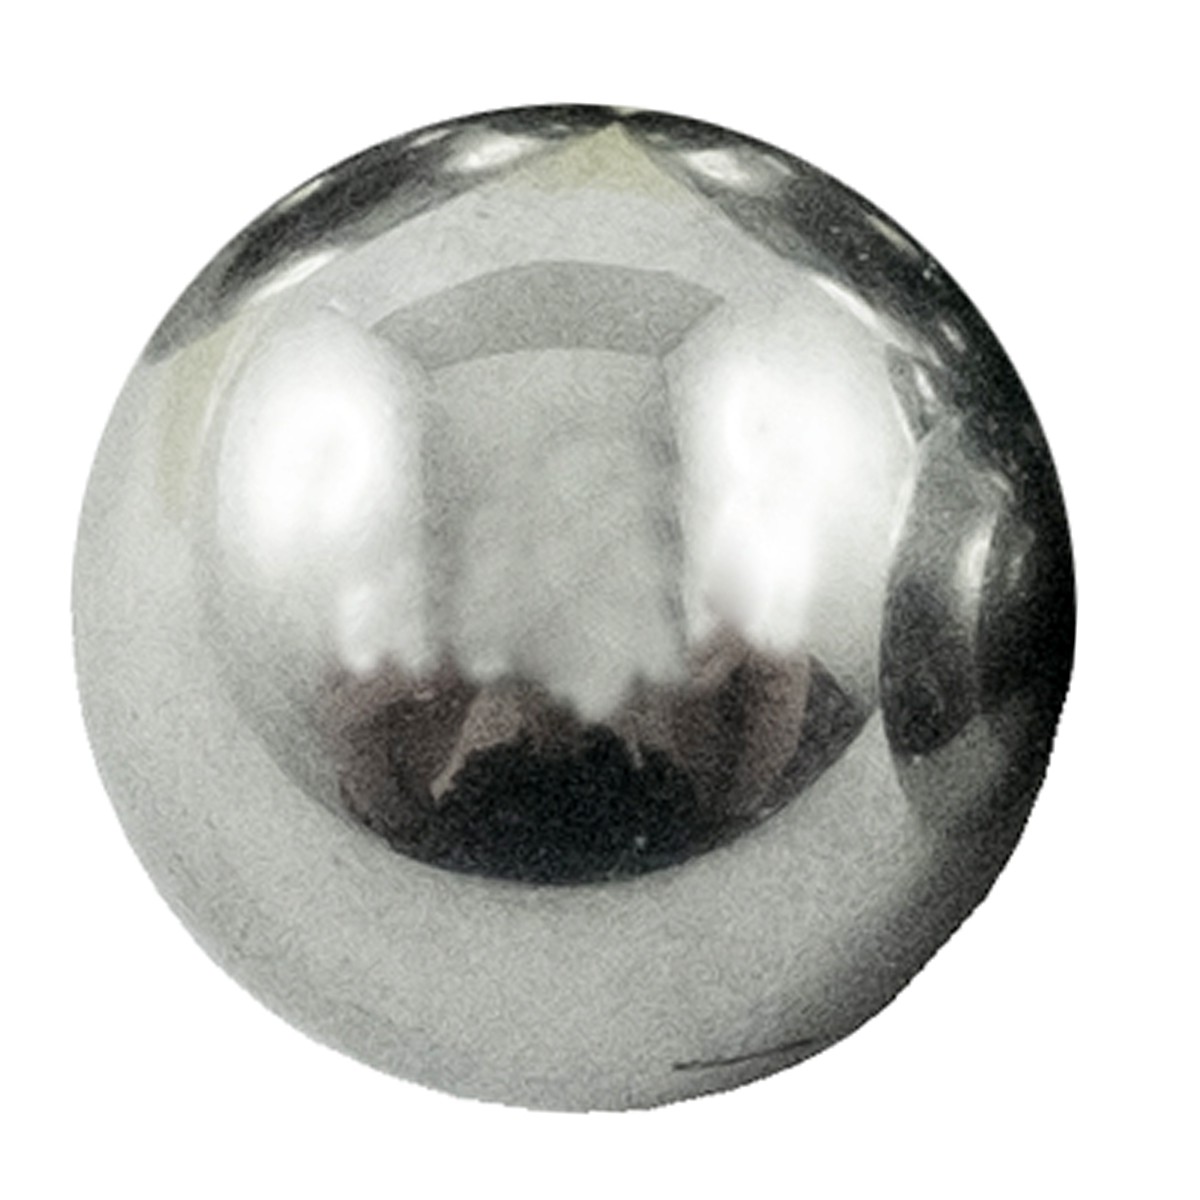 Shaft ball Ø 8.570 mm / LS XJ25 / LS MT1.25 / LS MT3.35 / LS MT3.40 / LS MT3.50 / LS MT3.60 / A067A009 / 40010339